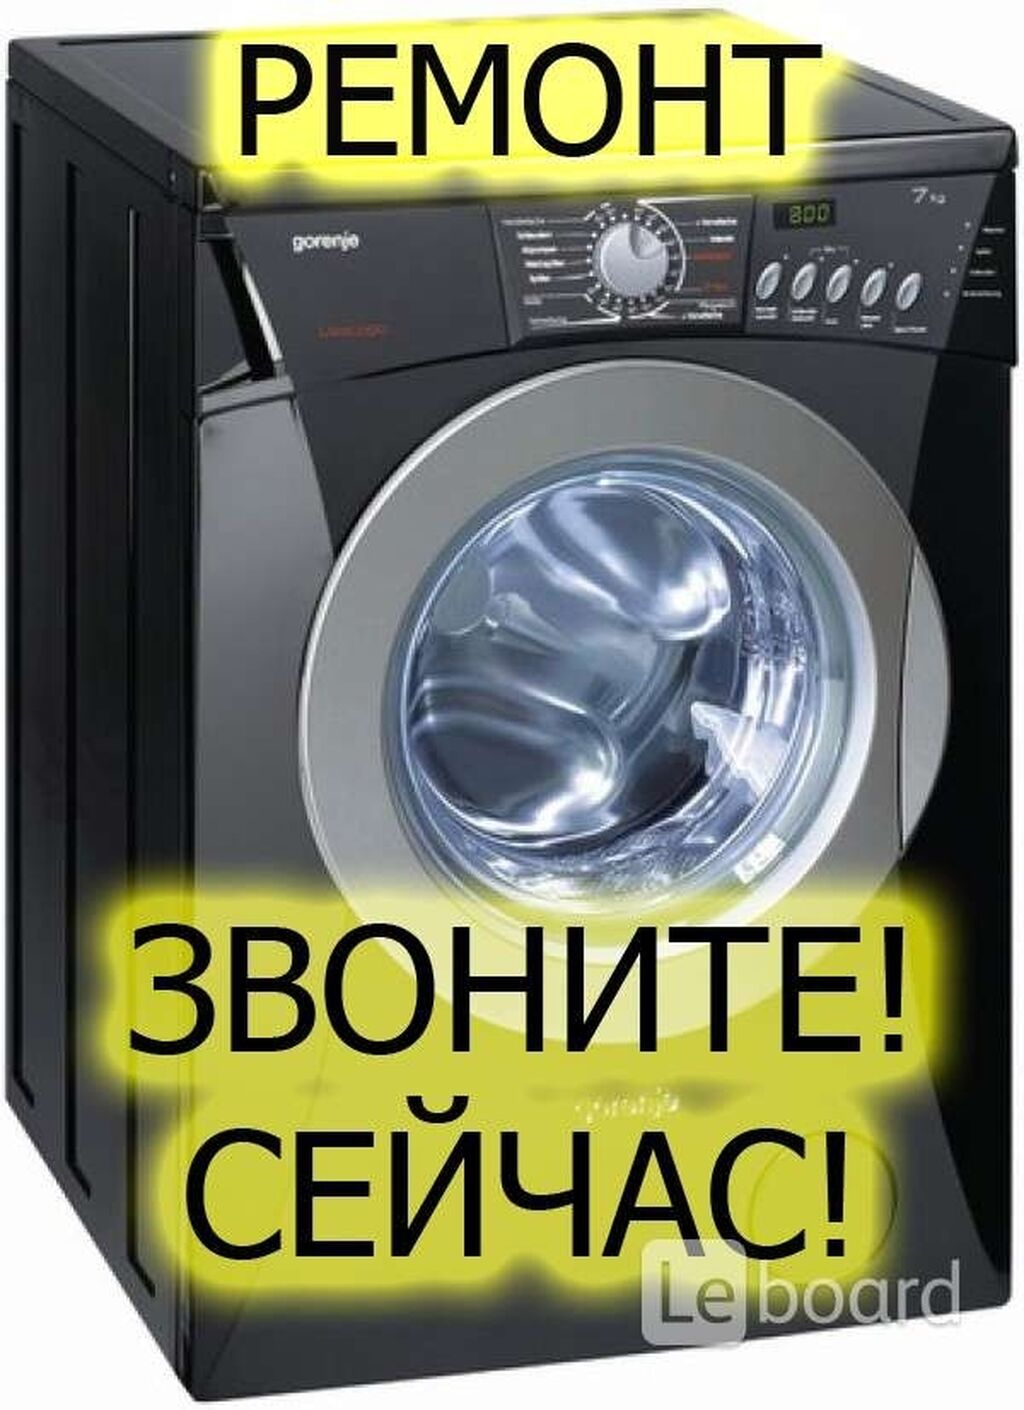 Авито объявления стиральные машины. Ремонт стиральных машин реклама. Ремонтирует стиральную машину. Мастер стиральных машин. Реклама бытовой техники.